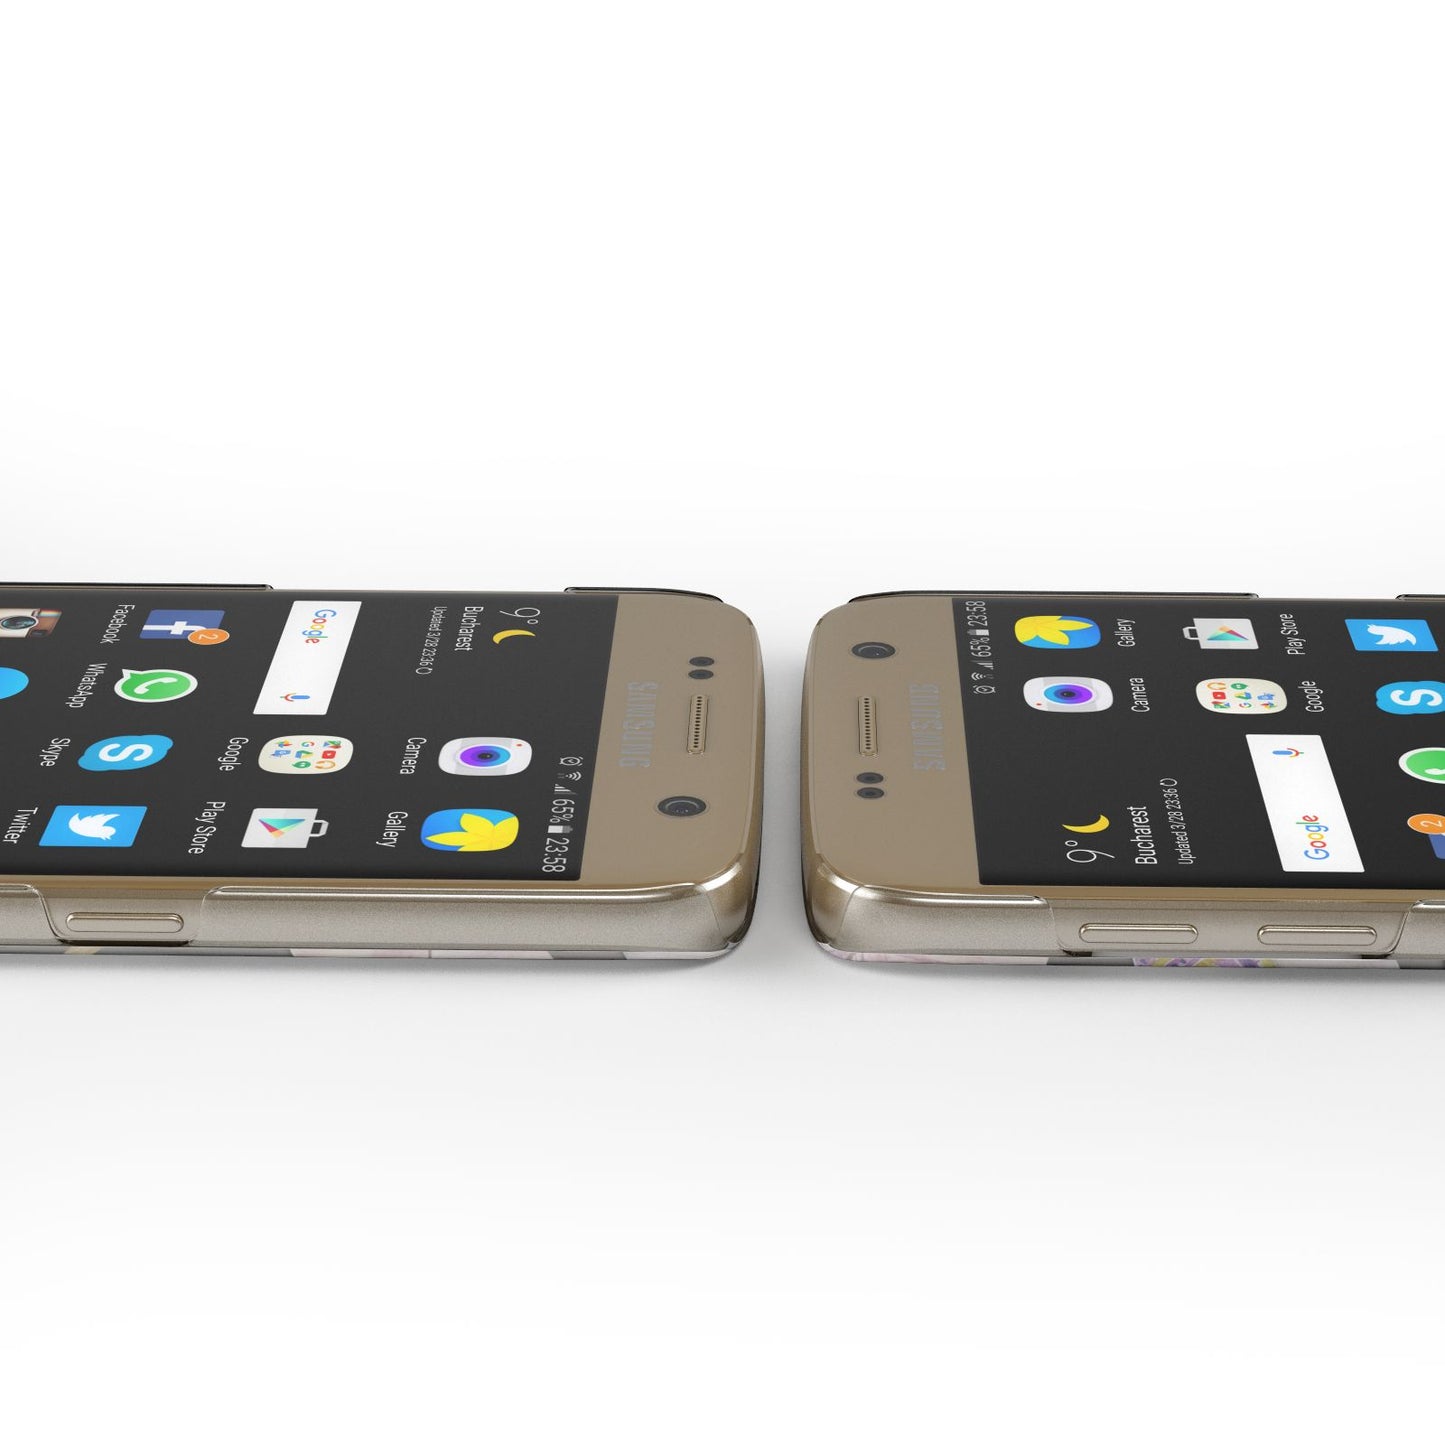 Personalised Llamas Samsung Galaxy Case Ports Cutout